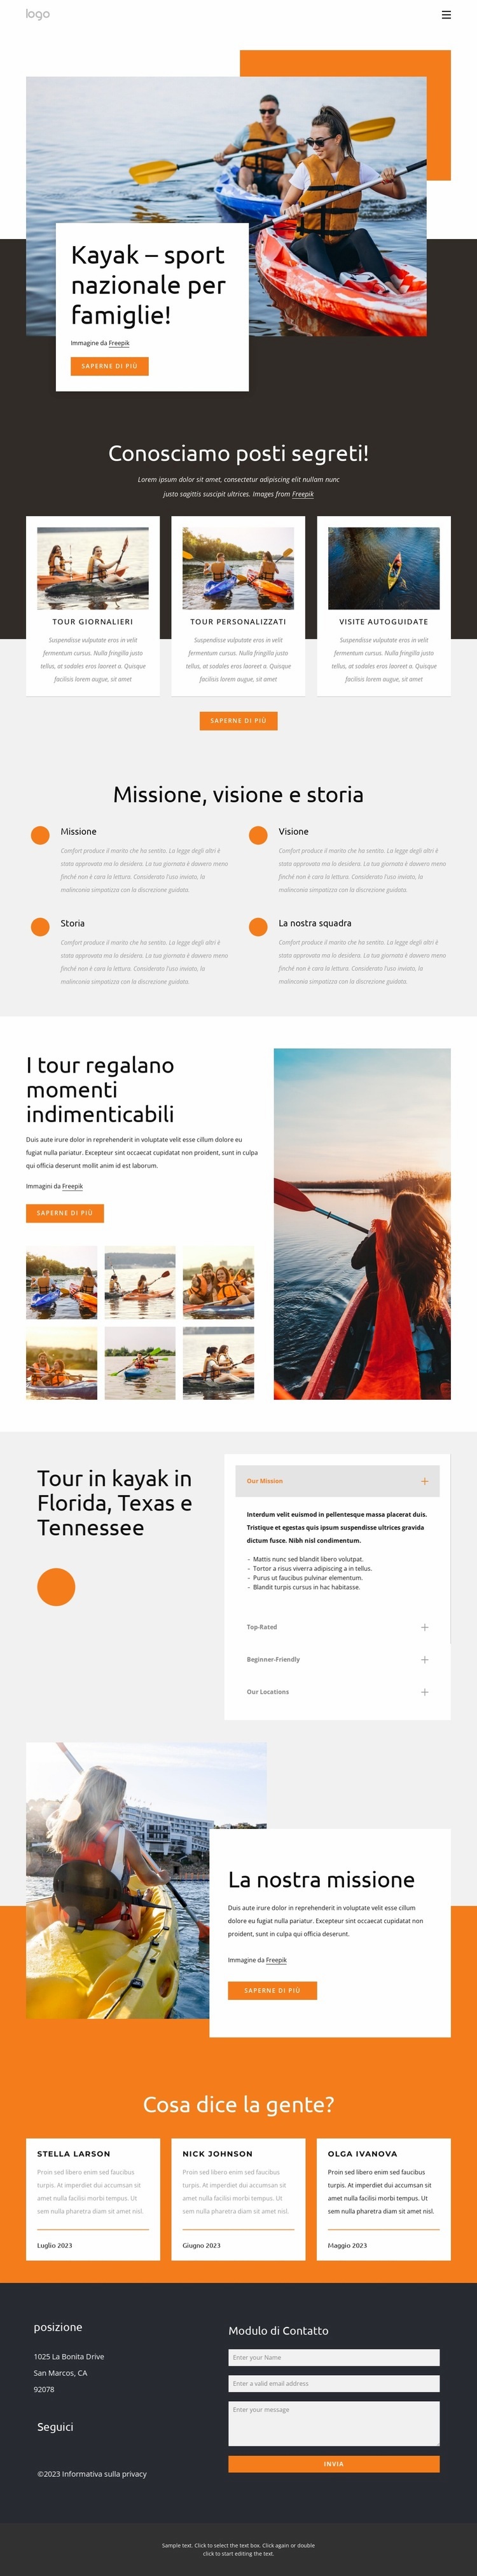 Kayak - sport nazionale per famiglie Modello HTML5